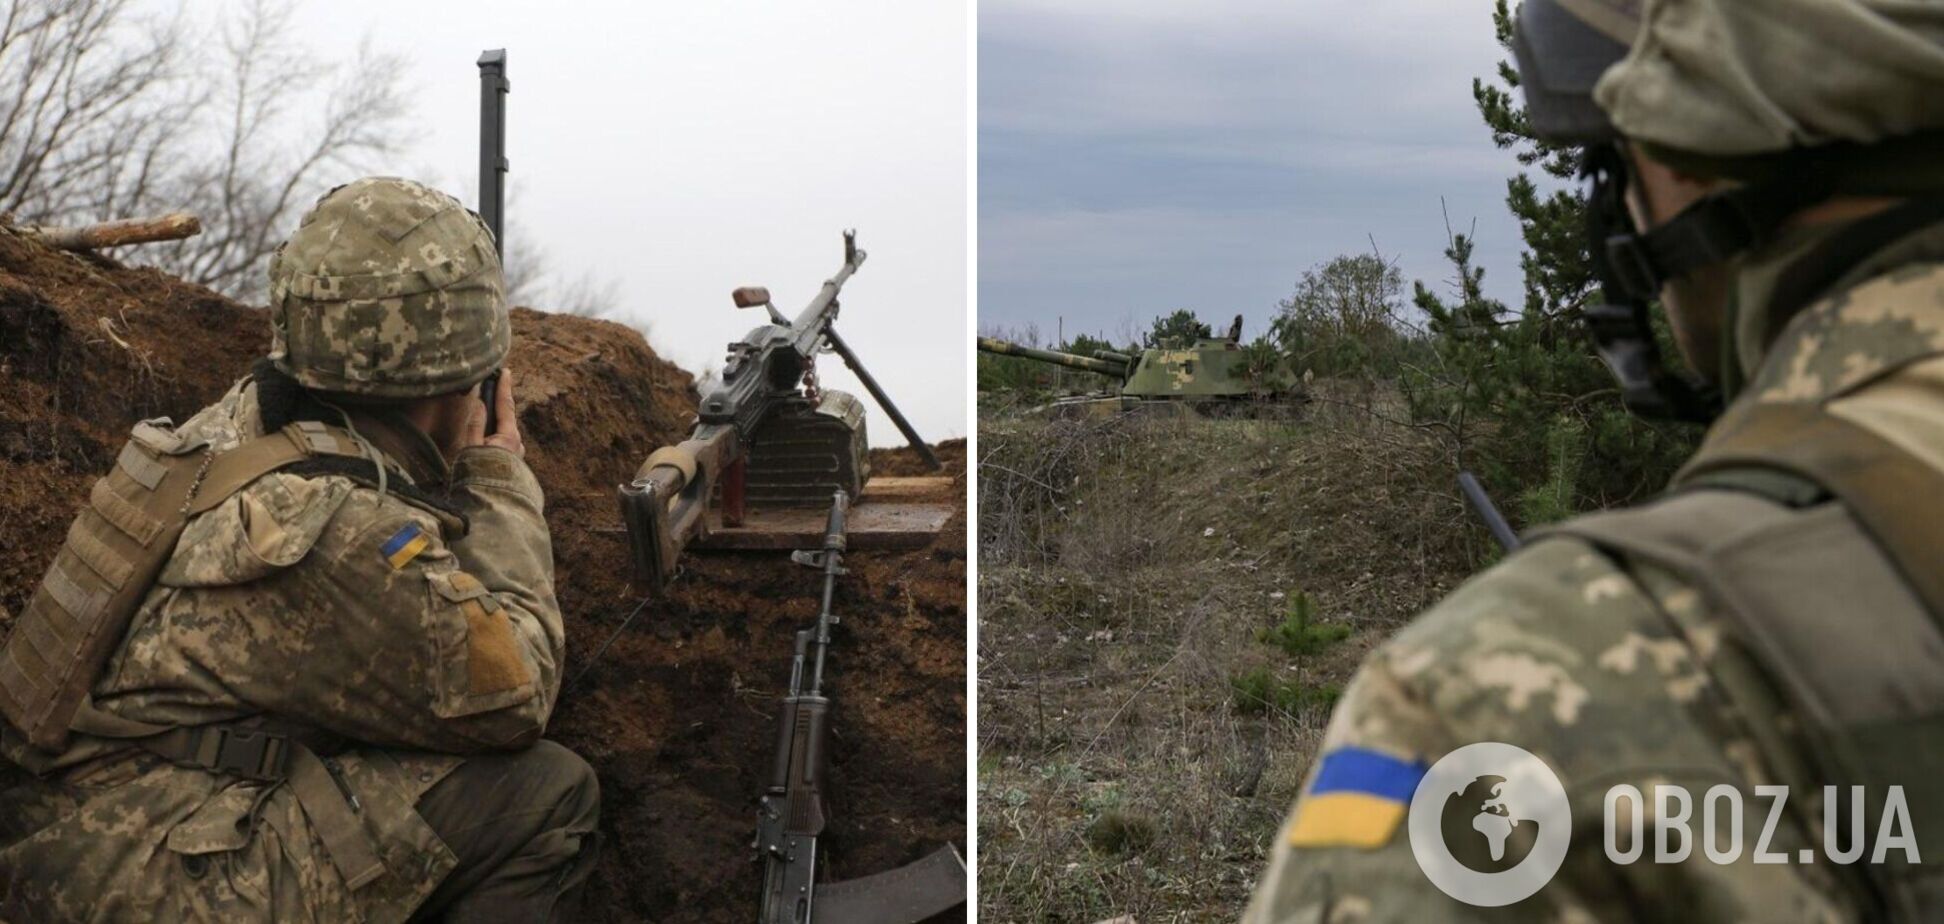 Наемники РФ на Донбассе ударили по ВСУ из запрещенного оружия